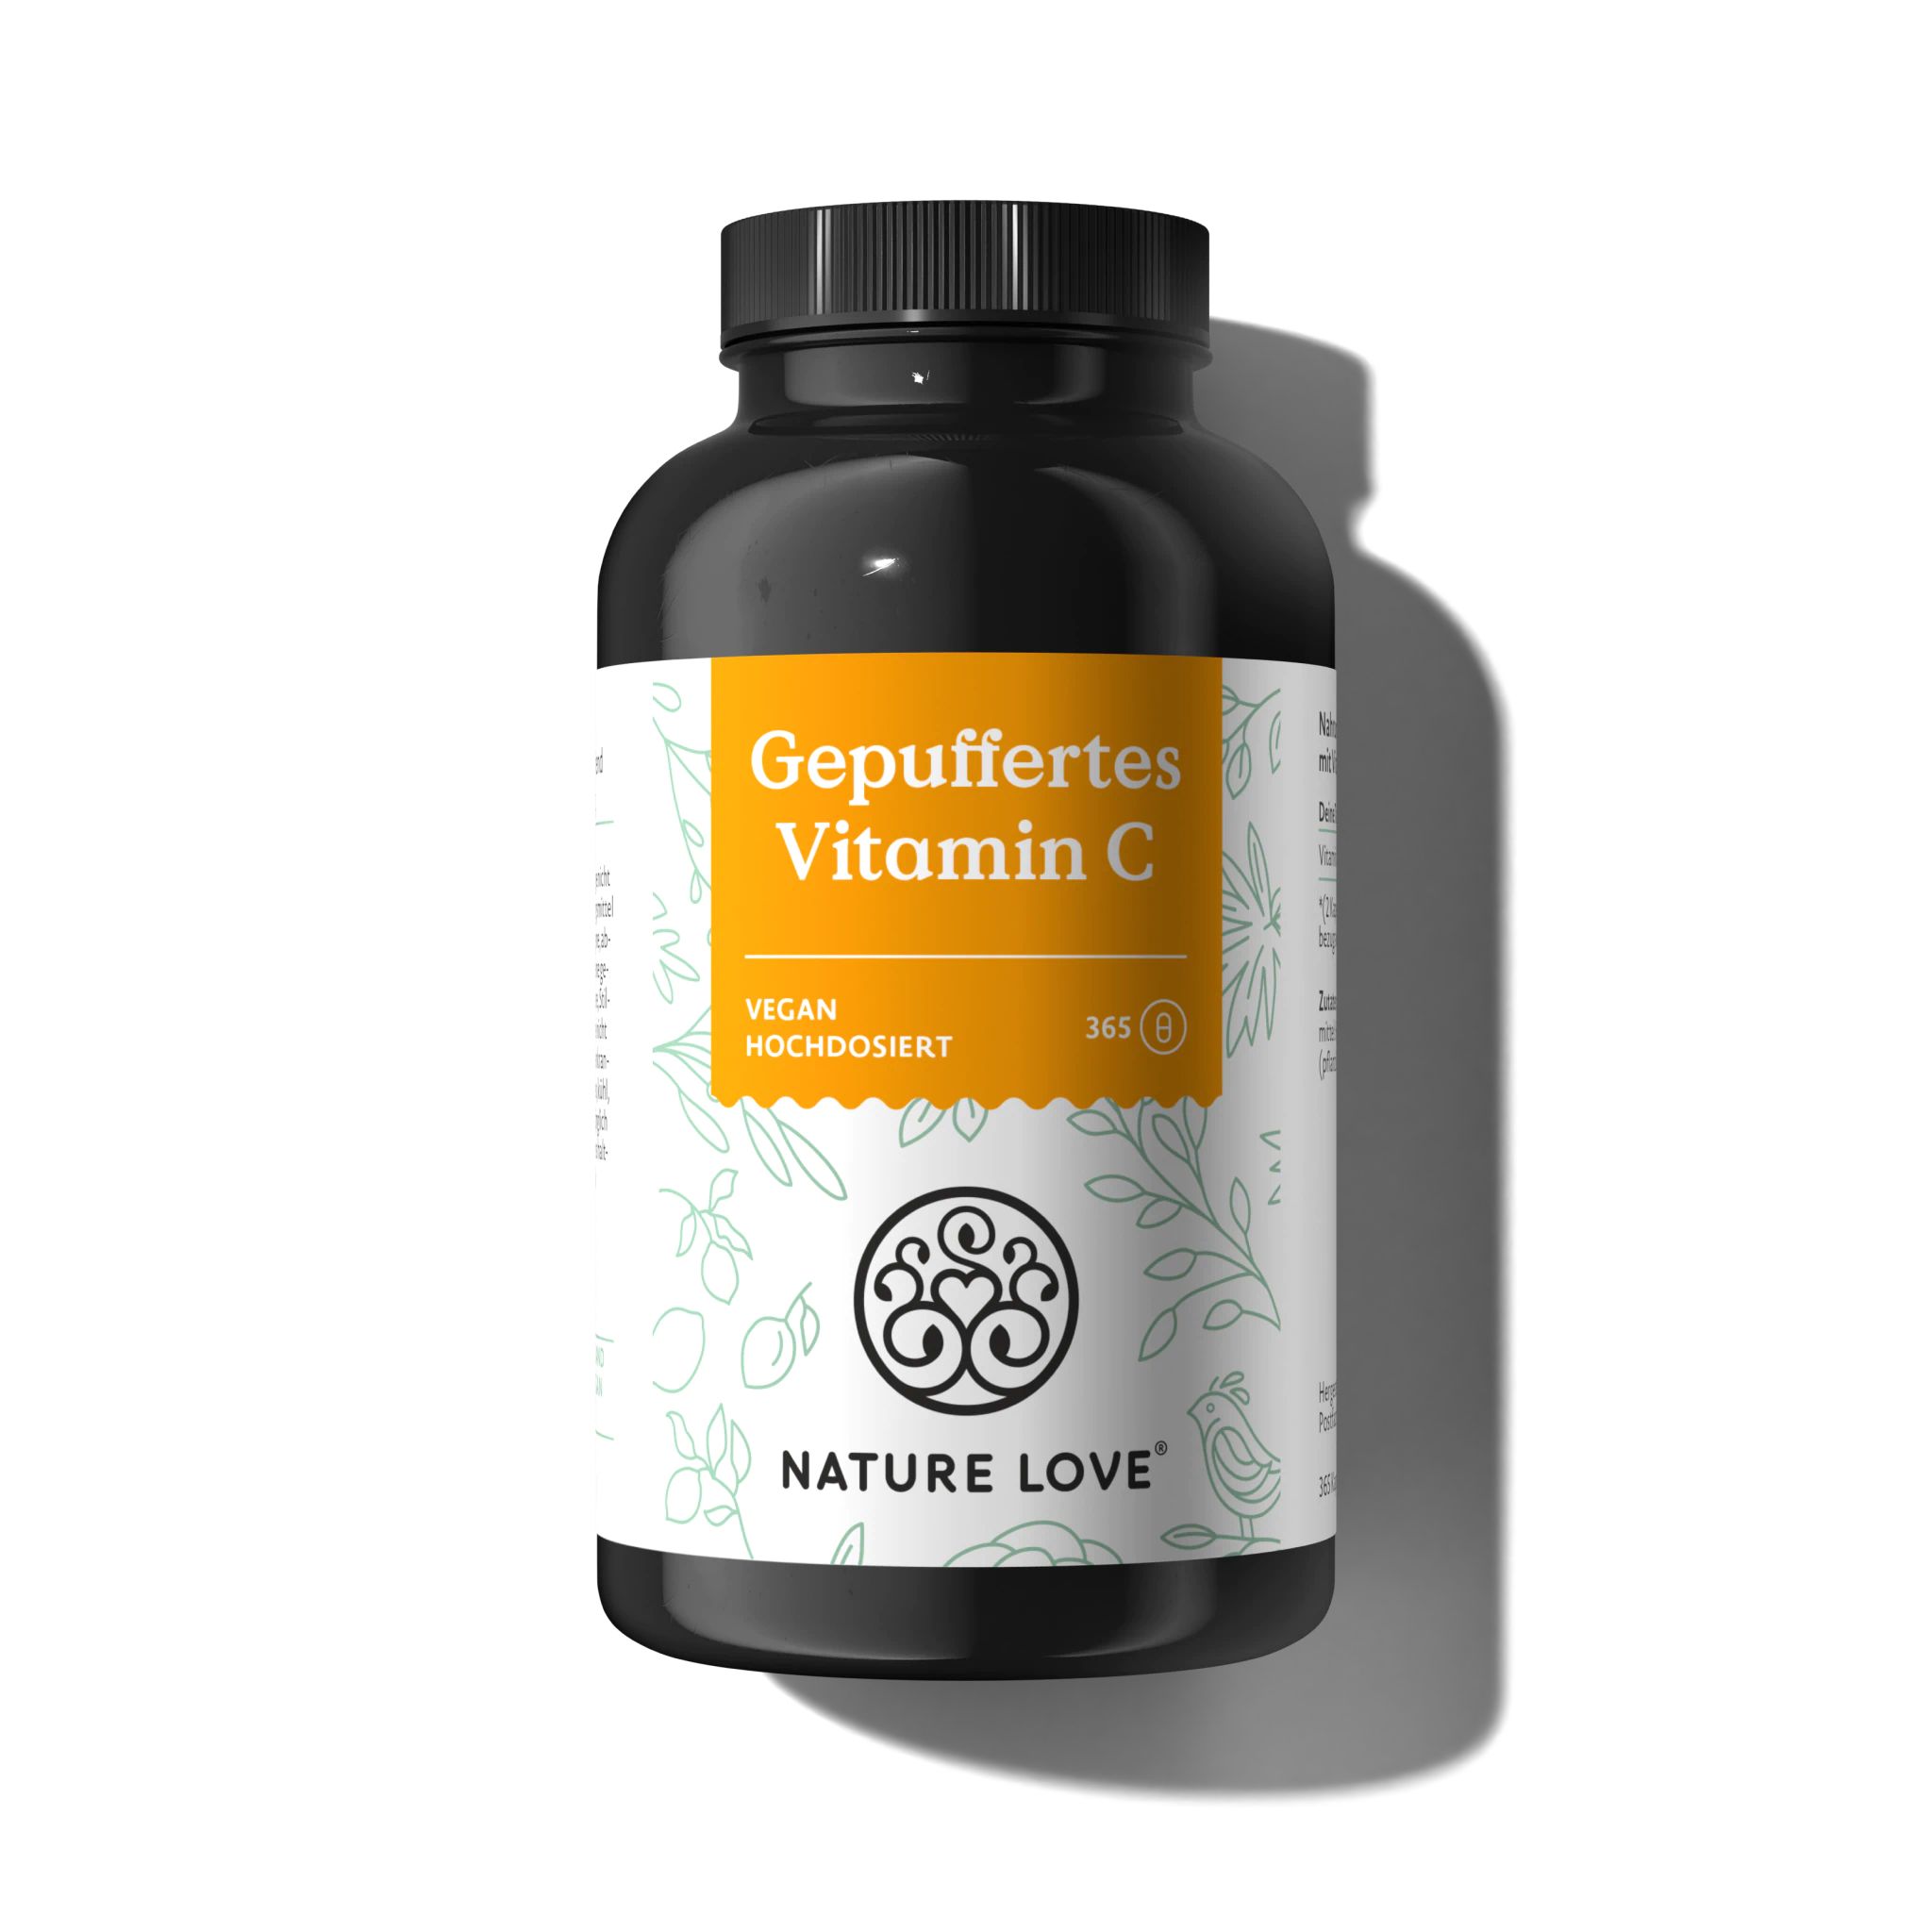 Nature Love® buffered vitamin C